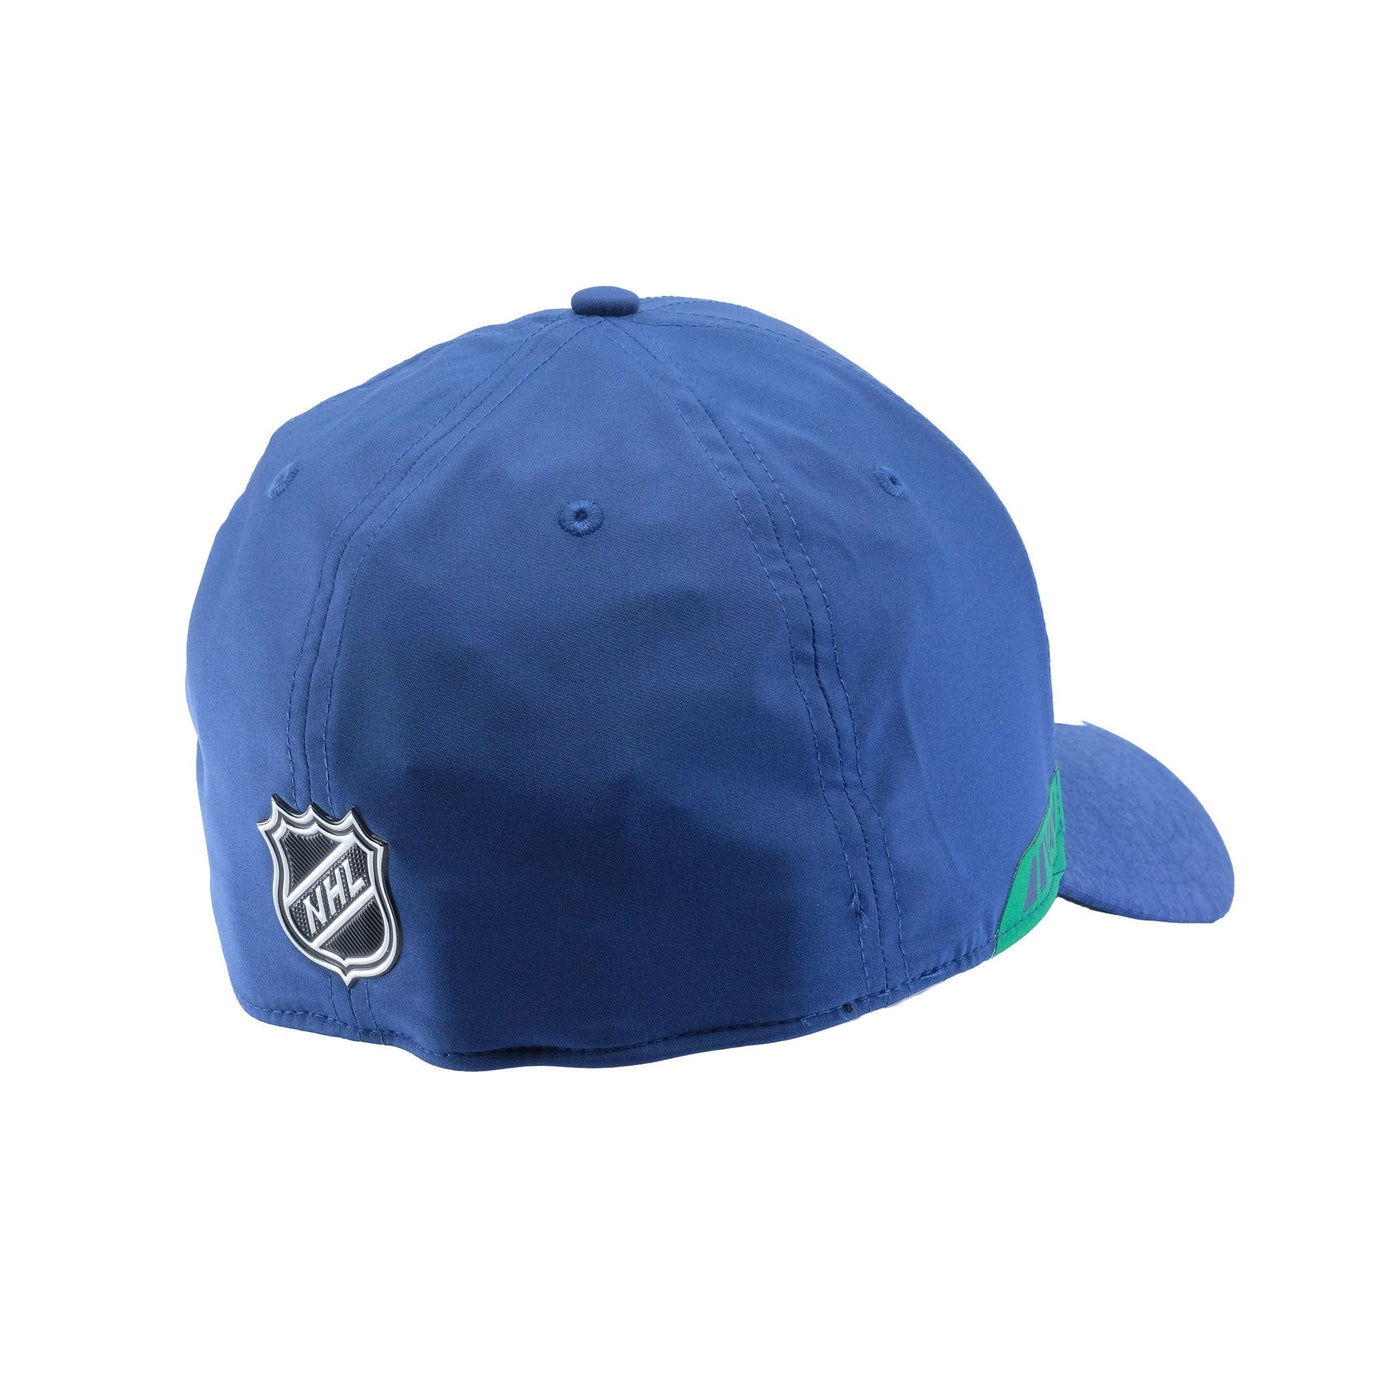 Fanatics NHL Authentic Pro Flexfit Hat